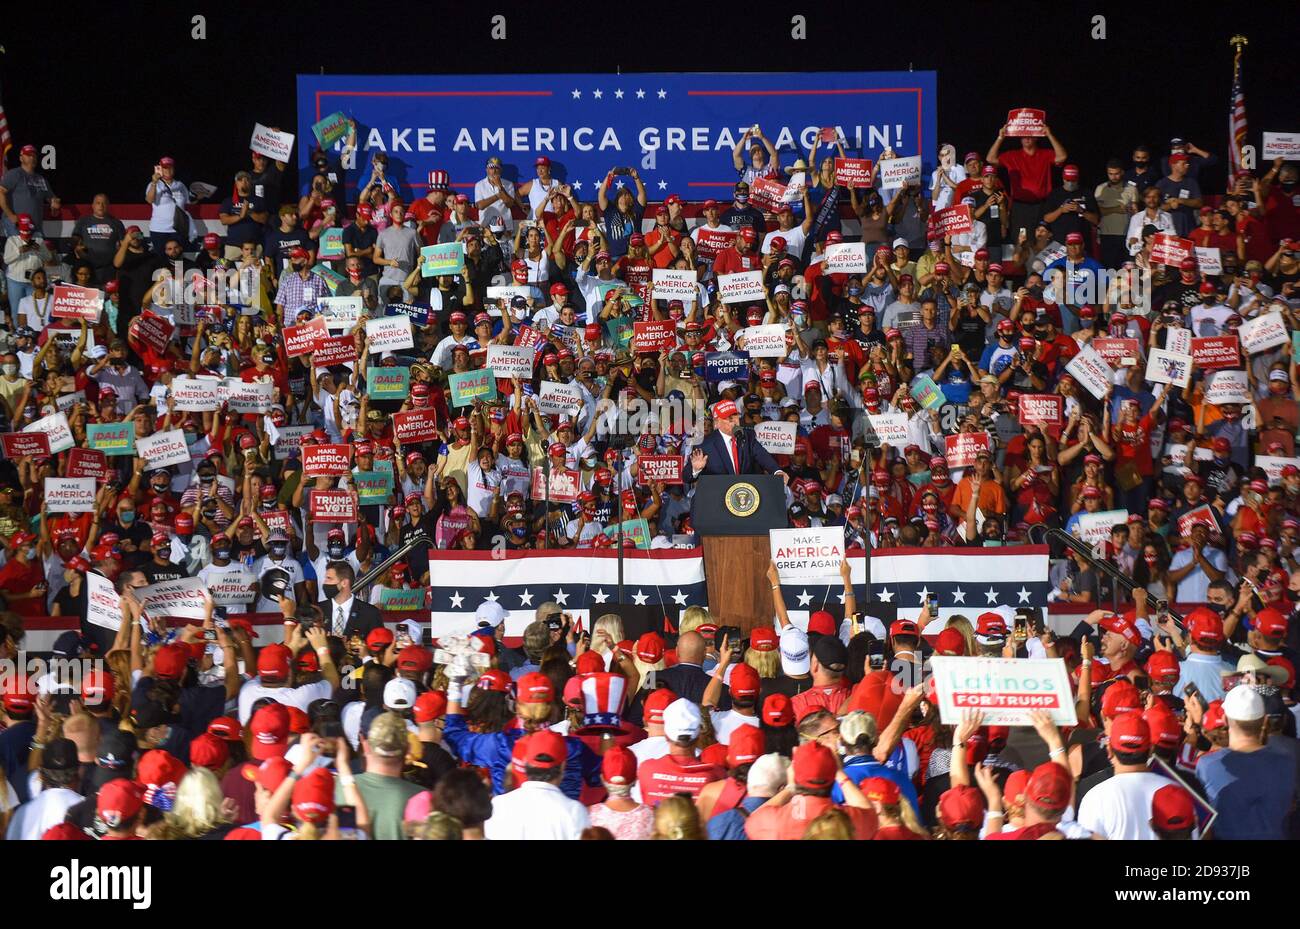 Le président américain Donald Trump s'adresse à ses partisans lors d'un rassemblement de campagne à l'aéroport exécutif de Miami-OPA Locka. Aujourd'hui, le président Trump a organisé des événements dans cinq États, alors qu'il poursuit sa campagne contre le candidat à la présidence démocrate Joe Biden deux jours avant l'élection de novembre 3. Banque D'Images